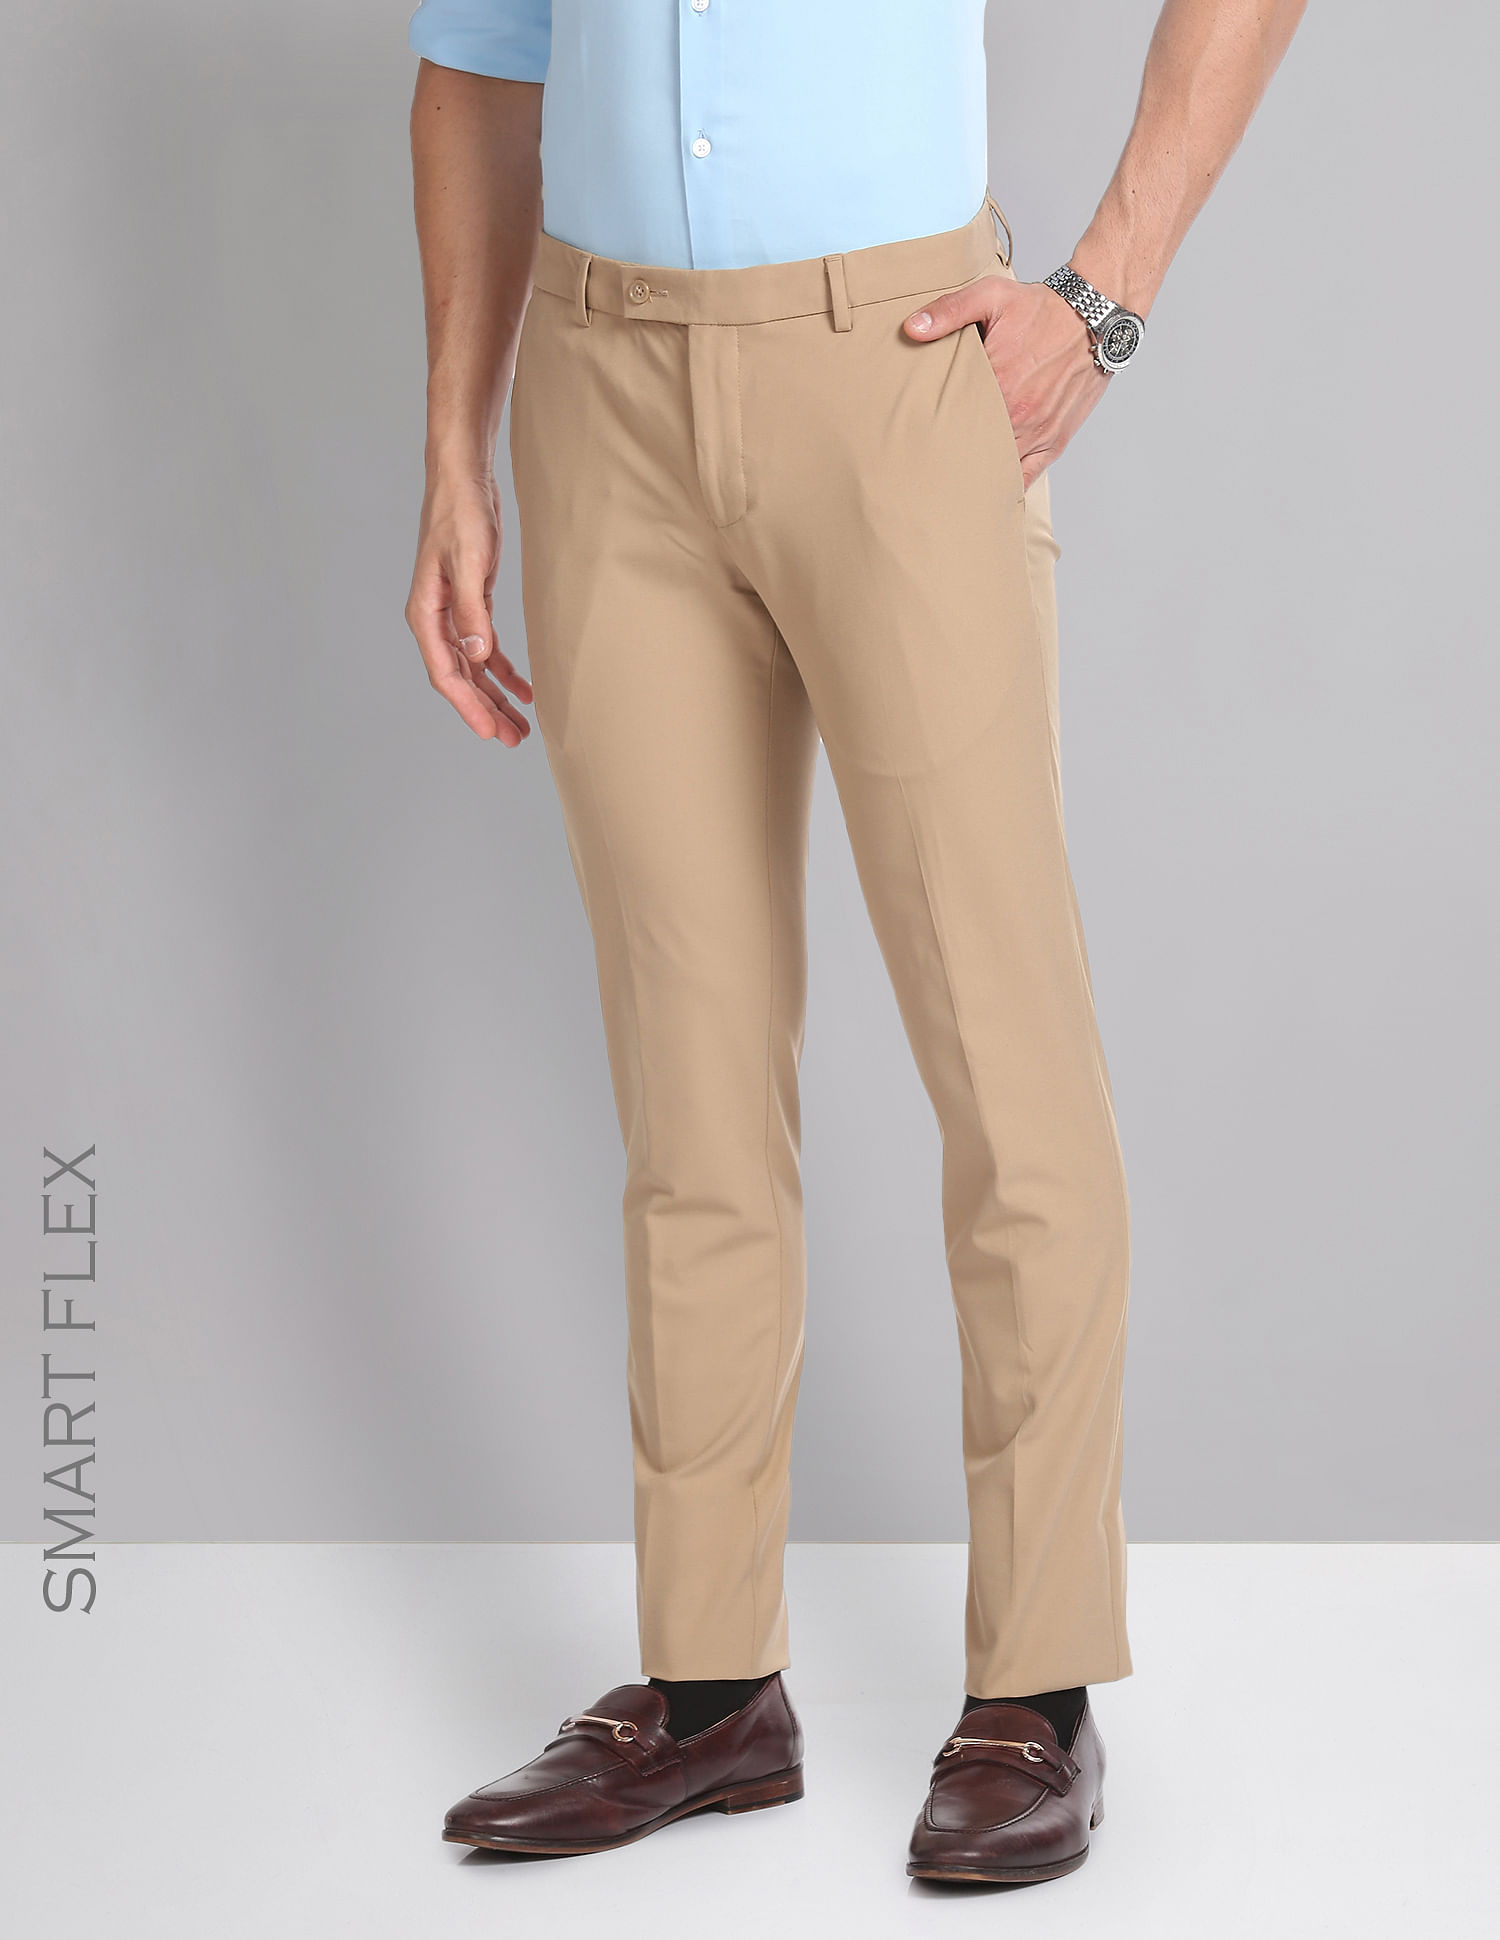 Formal Trouser Shop Online Men Beige Cotton Blend Formal Trouser at Cliths